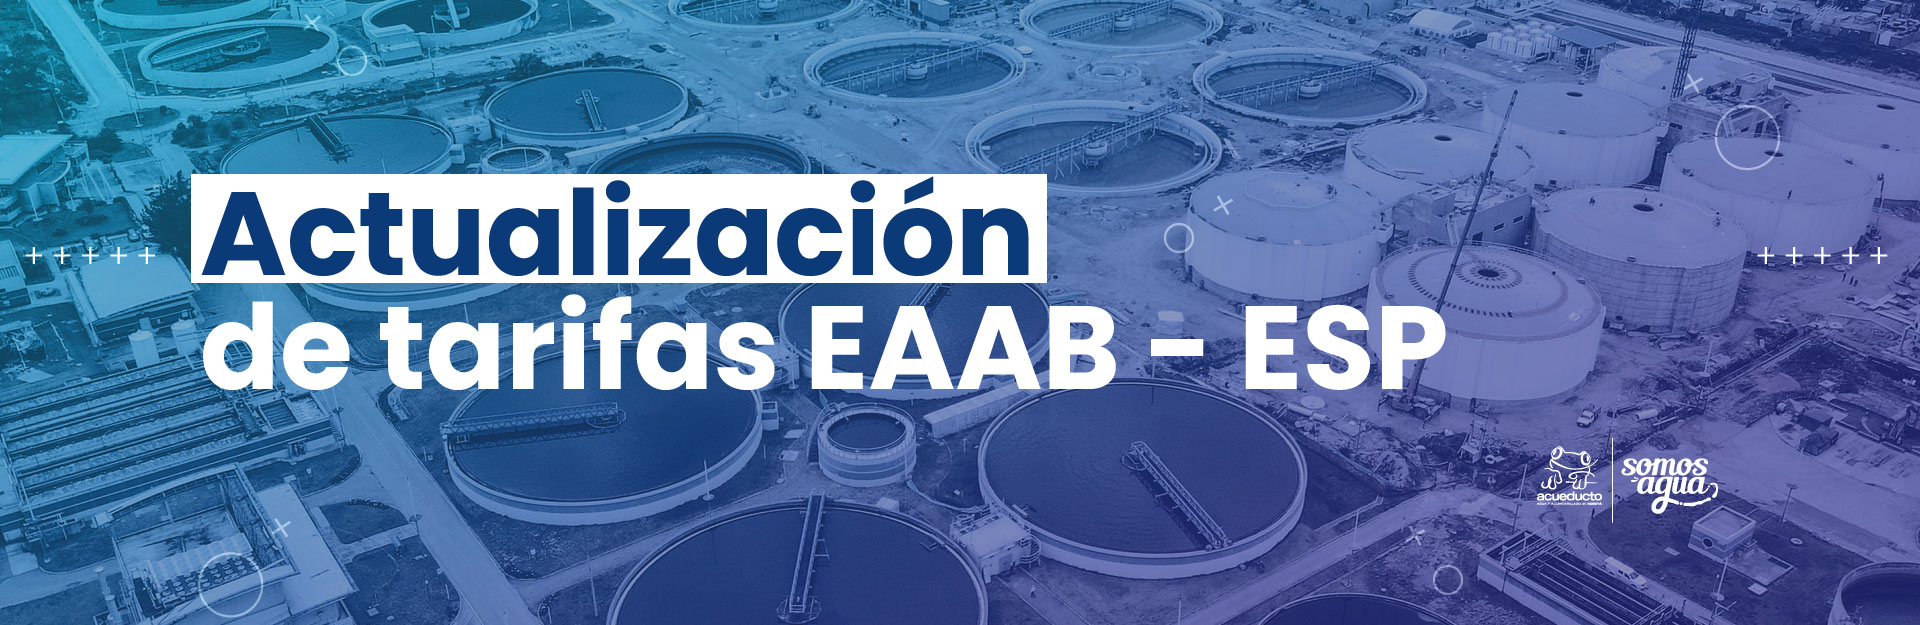 Actualización de tarifas EAAB - ESP Acuerdo No. 70   (03 de junio de 2021)